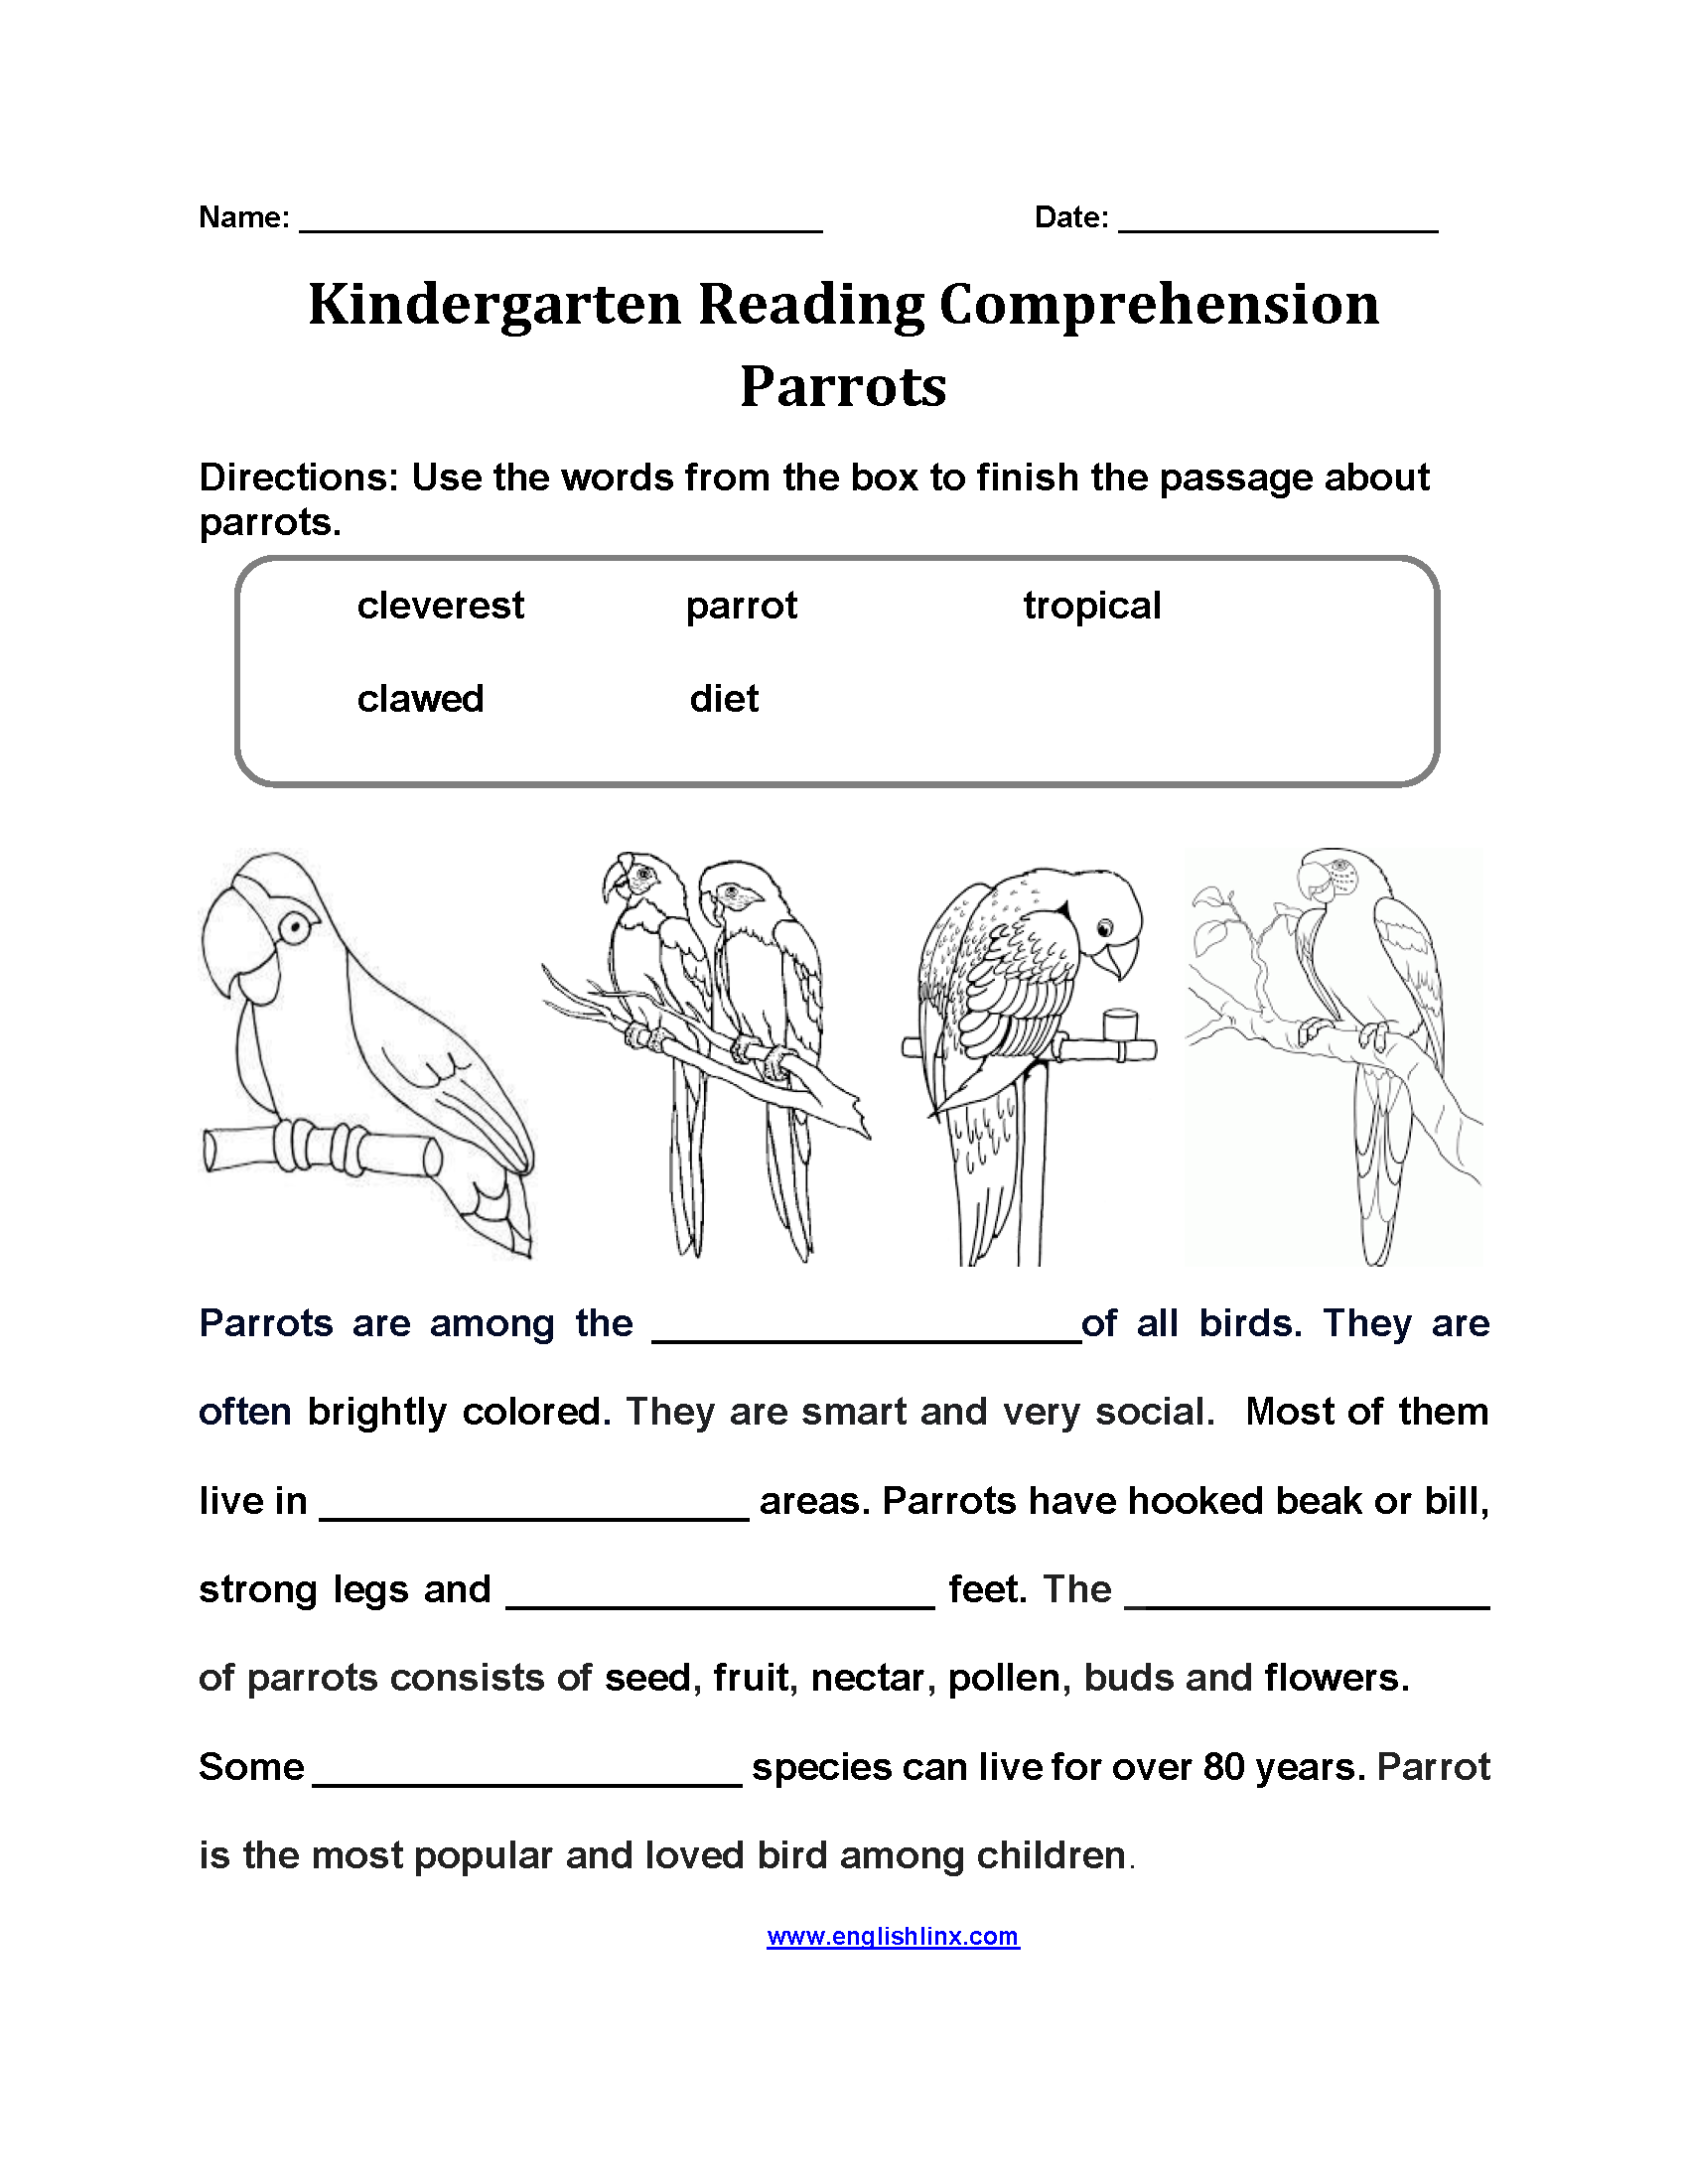 Parrots Kindergarten Reading Comprehension Worksheets